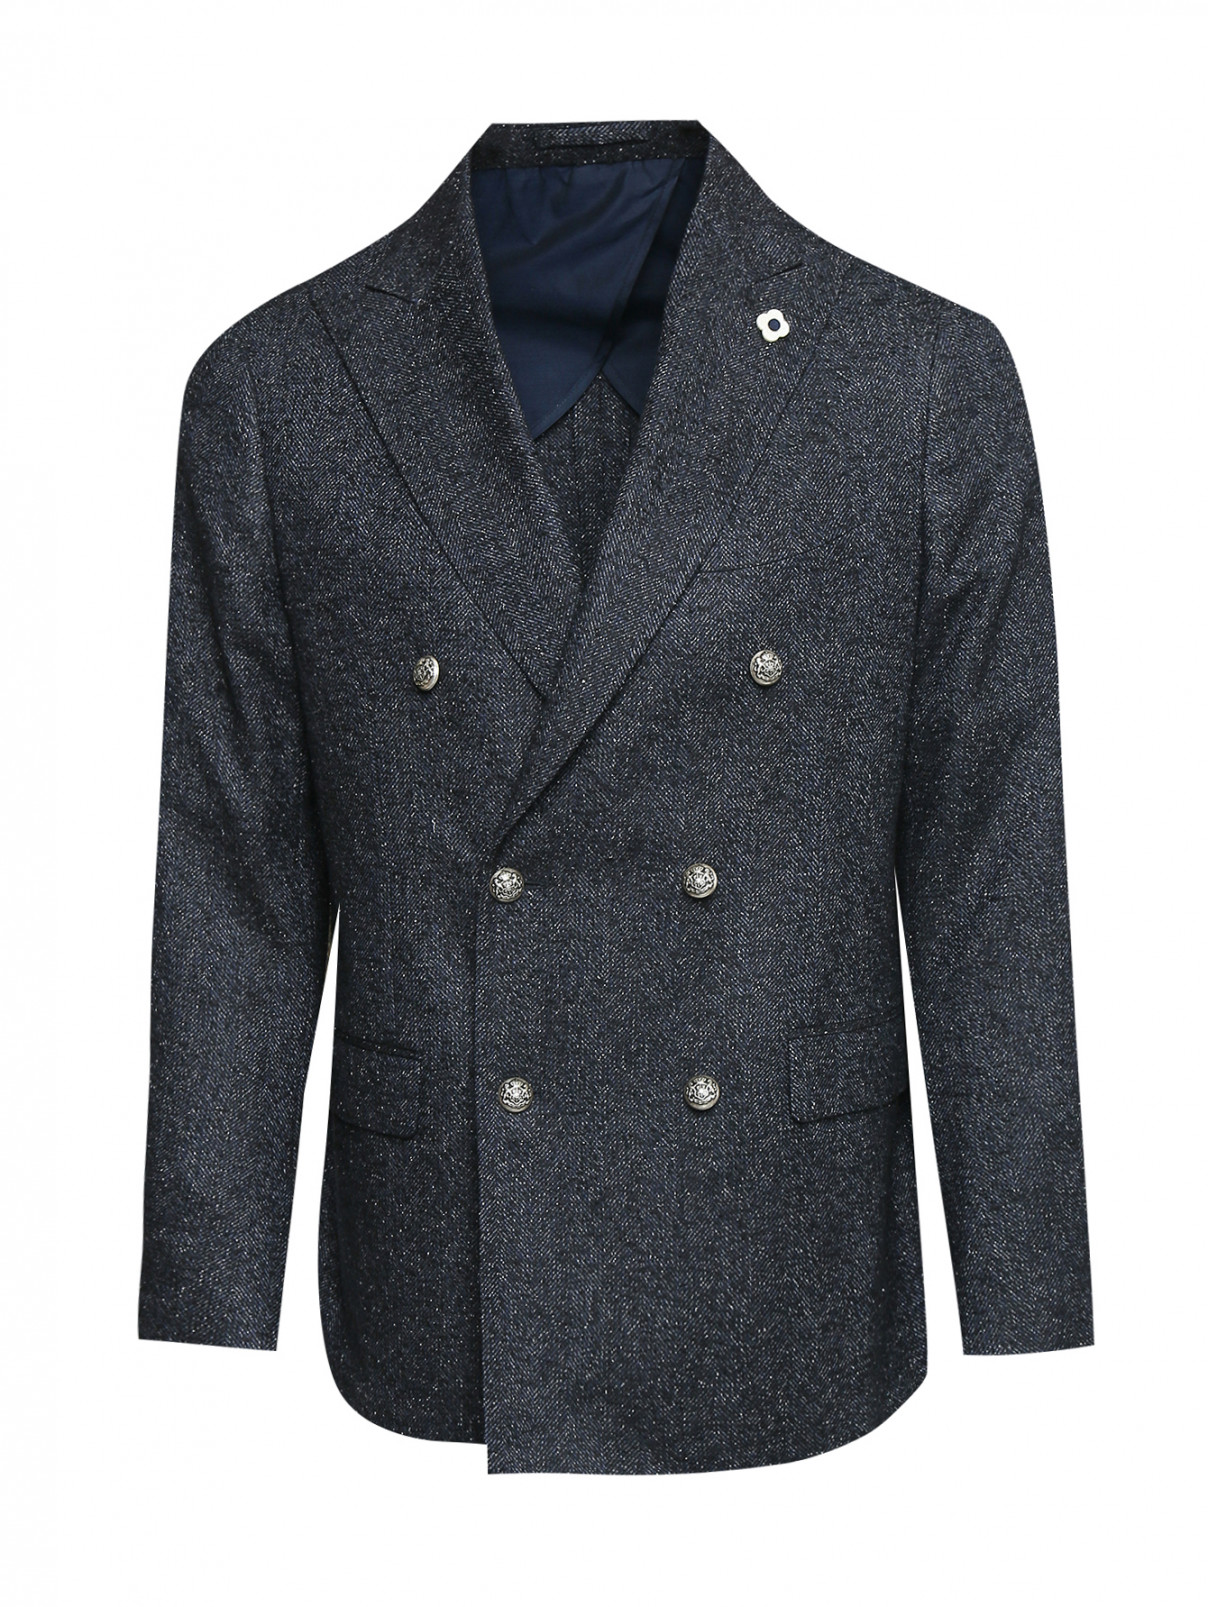 Двубортный пиджак из шерсти и шелка LARDINI  –  Общий вид  – Цвет:  Синий